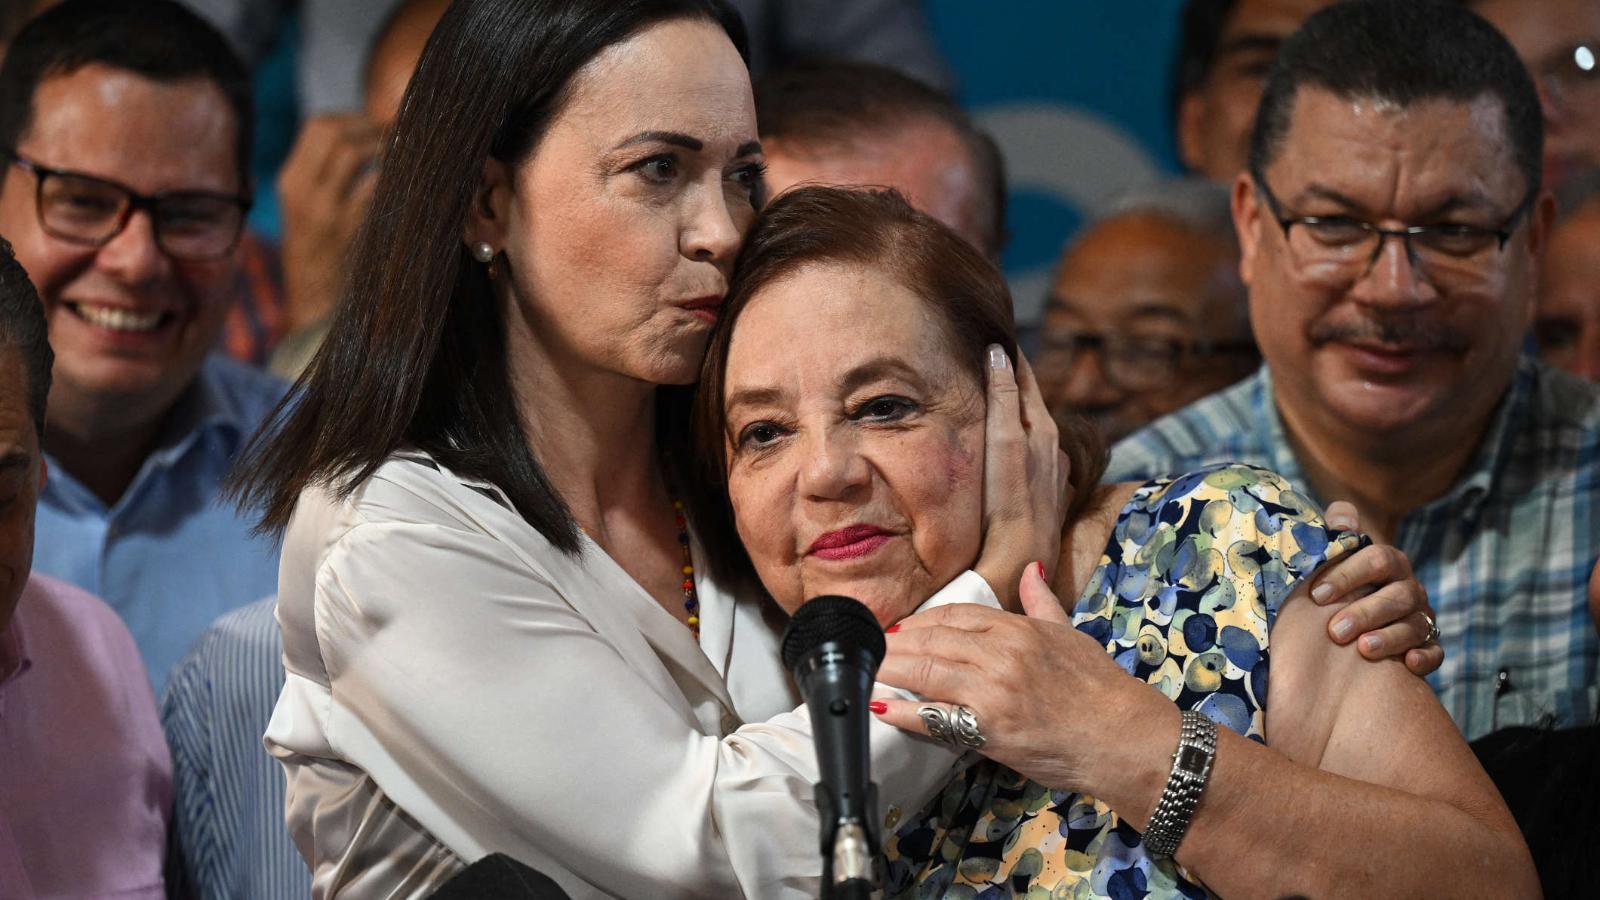 Postulación de Corina Yoris como candidata de la oposición de
Venezuela manda mensaje de unidad, dice experto